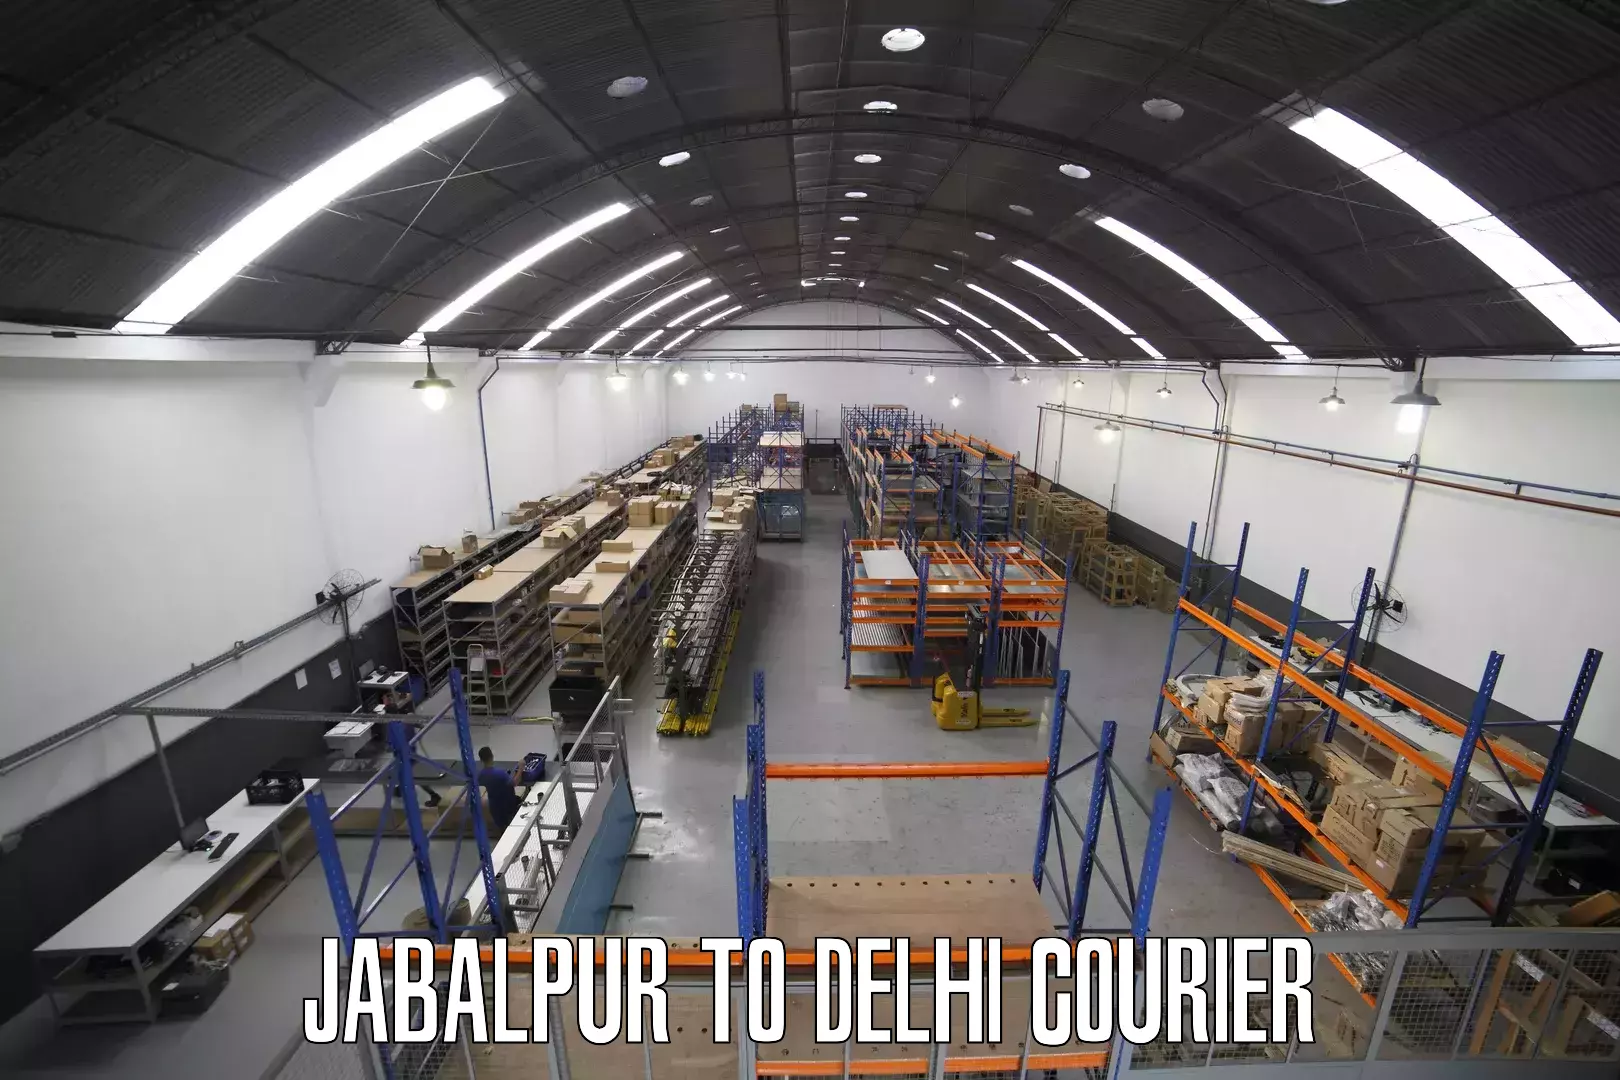 Air courier services Jabalpur to Jamia Millia Islamia New Delhi